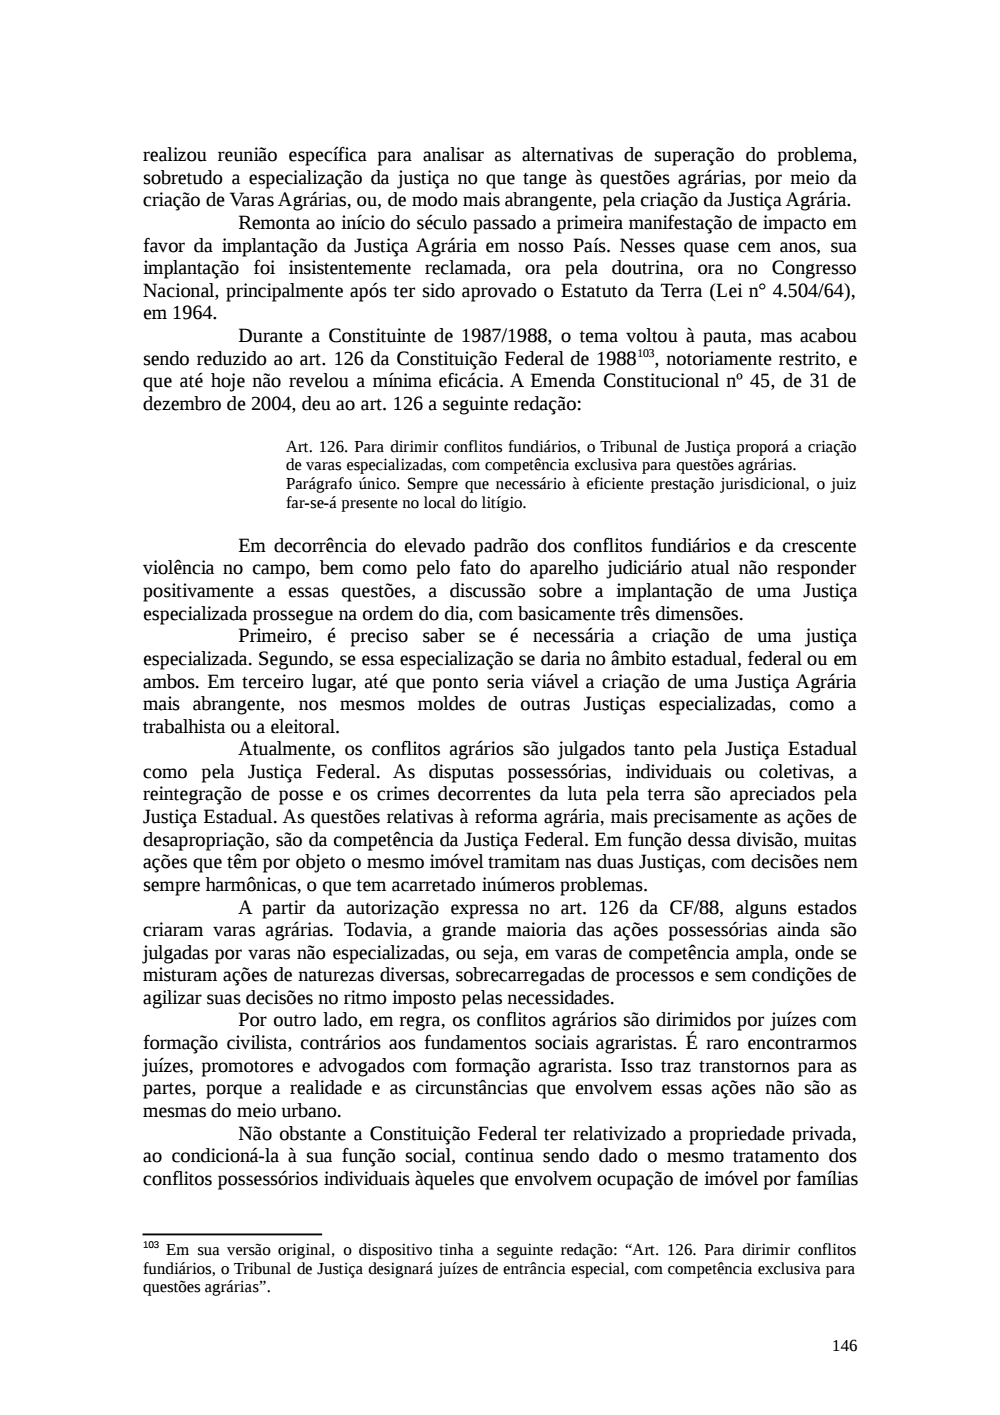 Page 146 from Relatório final da comissão